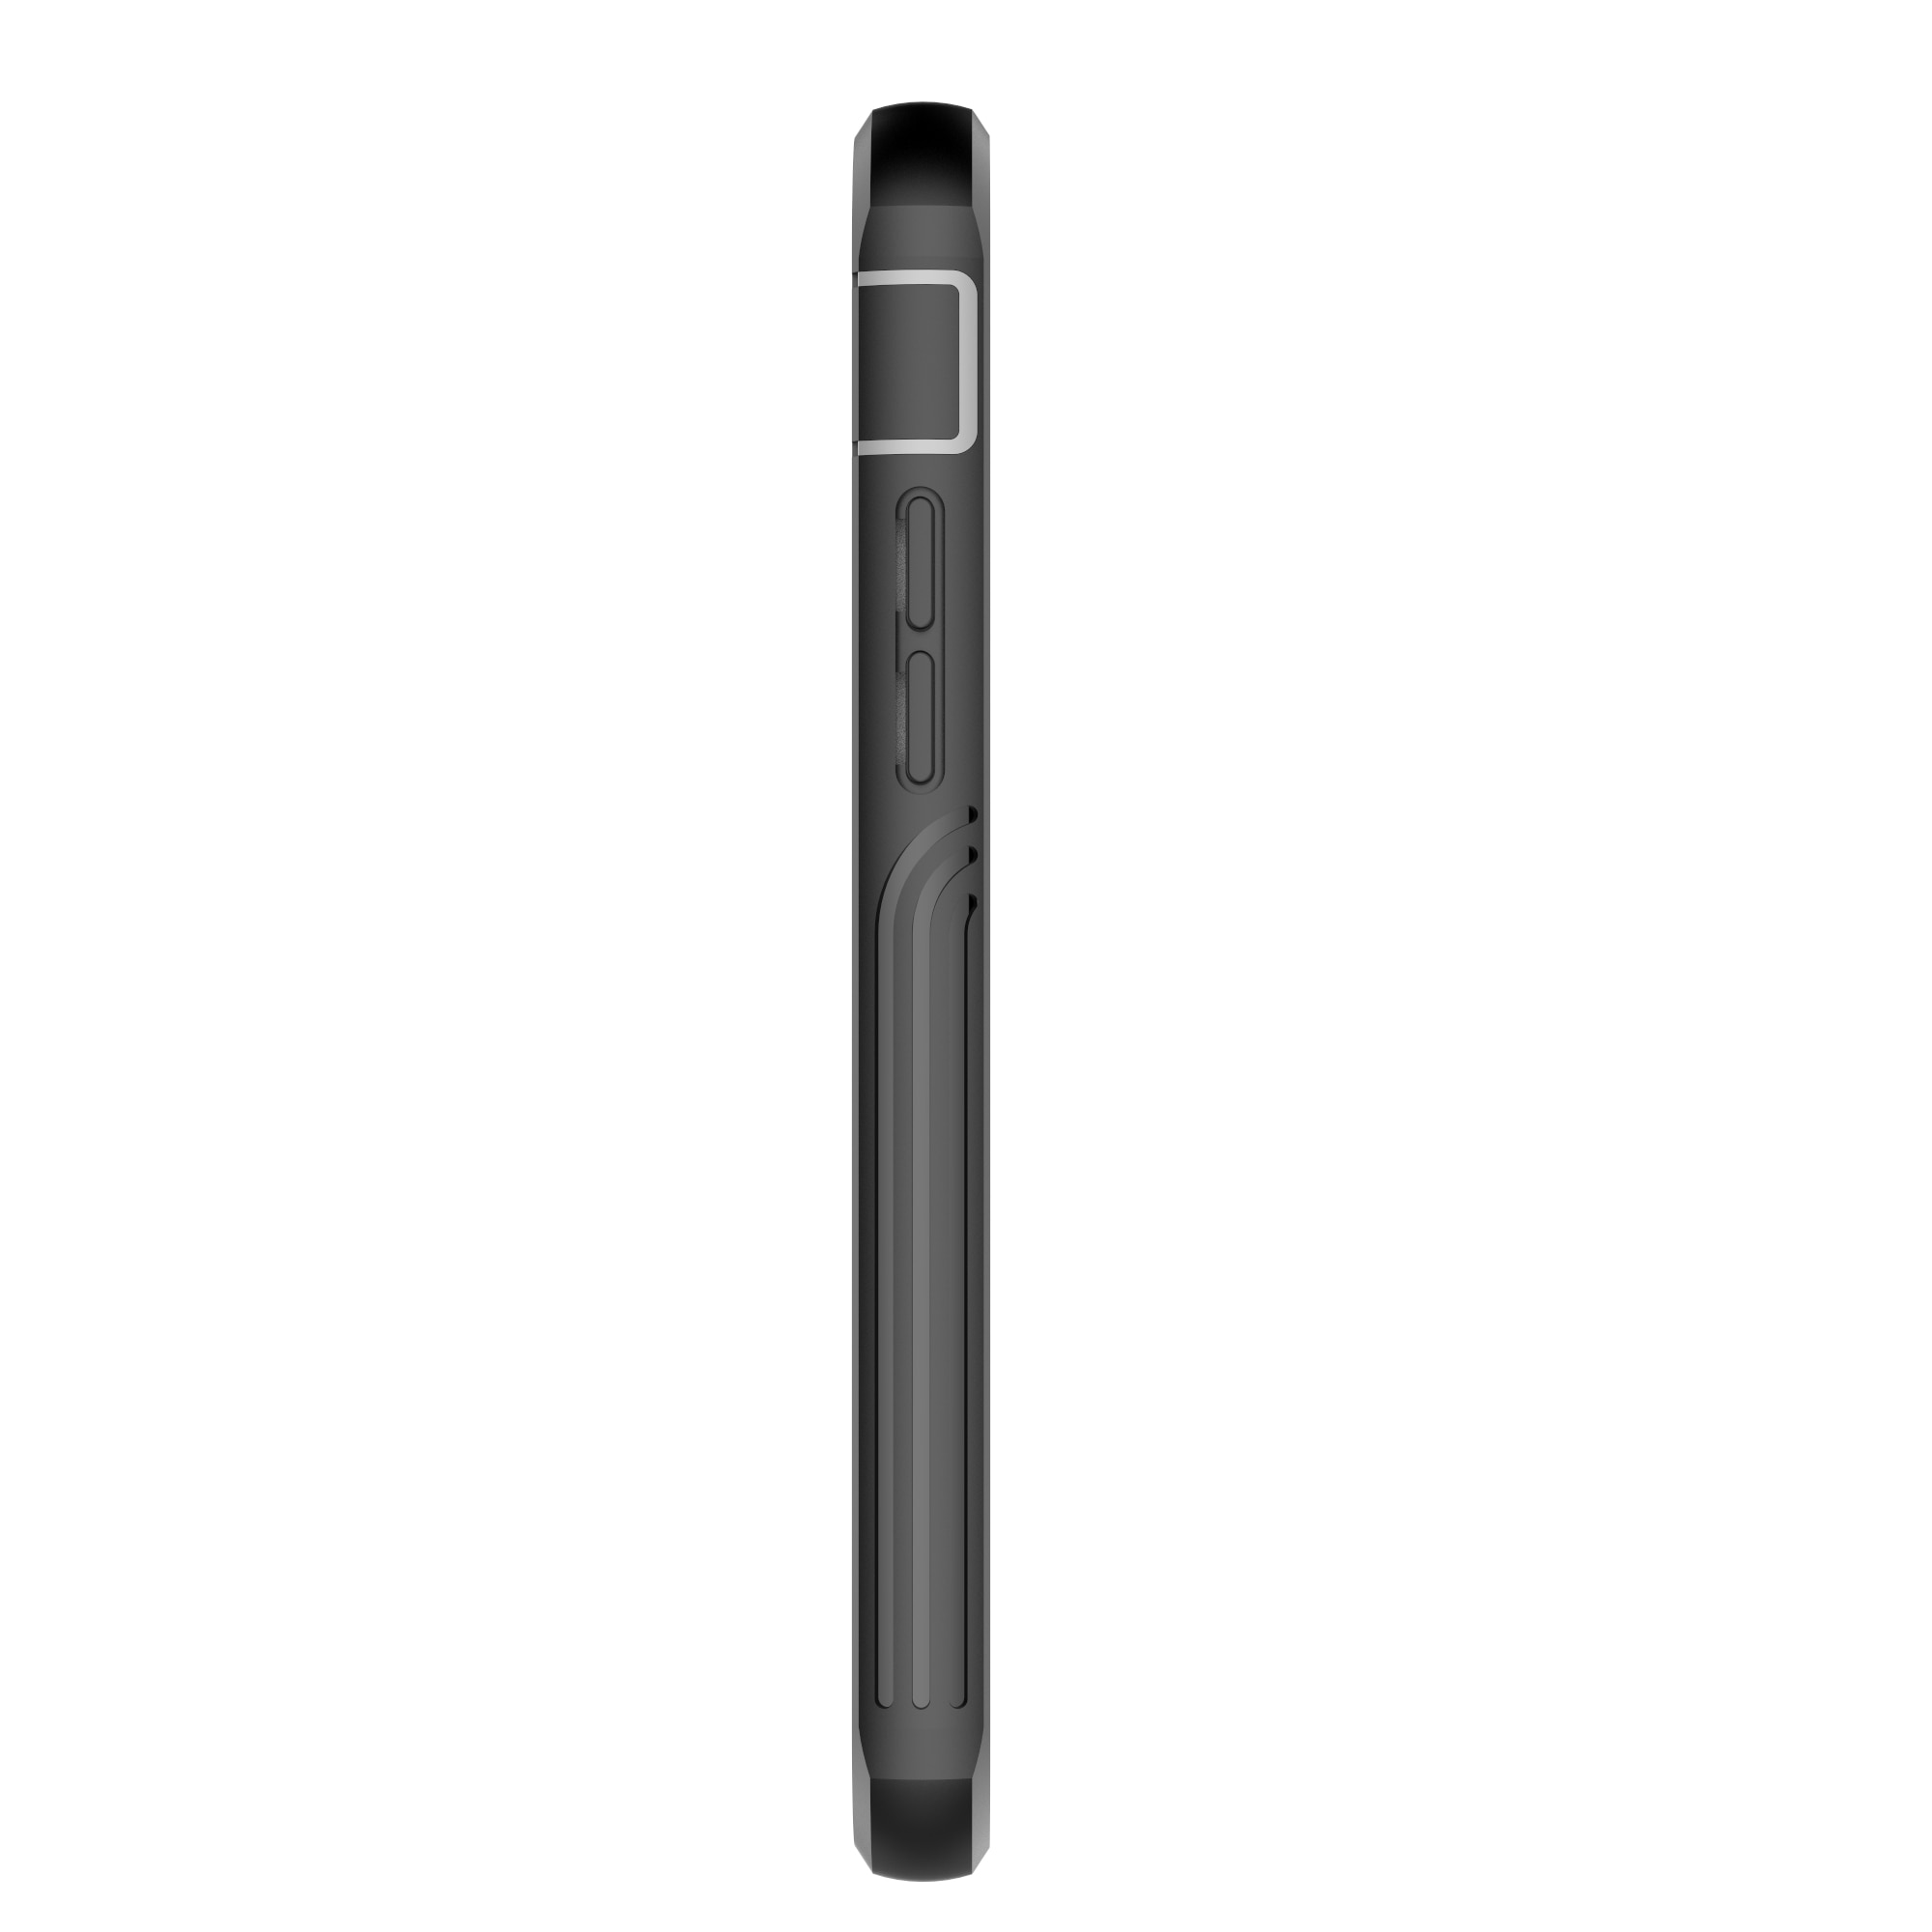 iPhone SE (2020) Premium Full Protection Case Black